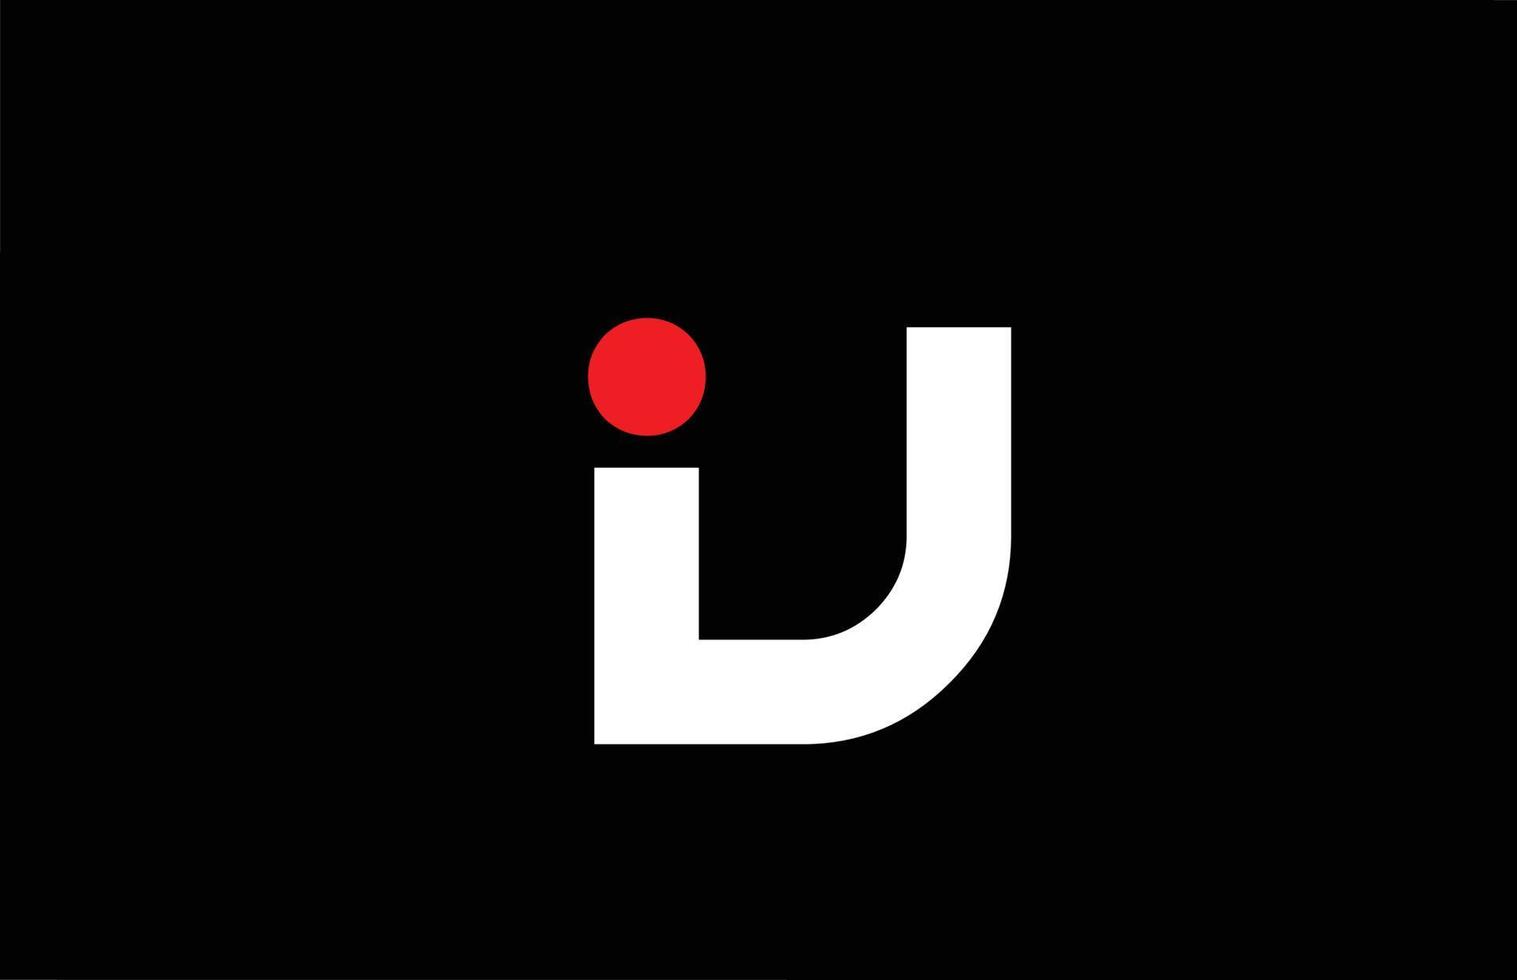 v design de logotipo de ícone de letra do alfabeto. modelo criativo para empresa e negócios com ponto vermelho em branco e preto vetor